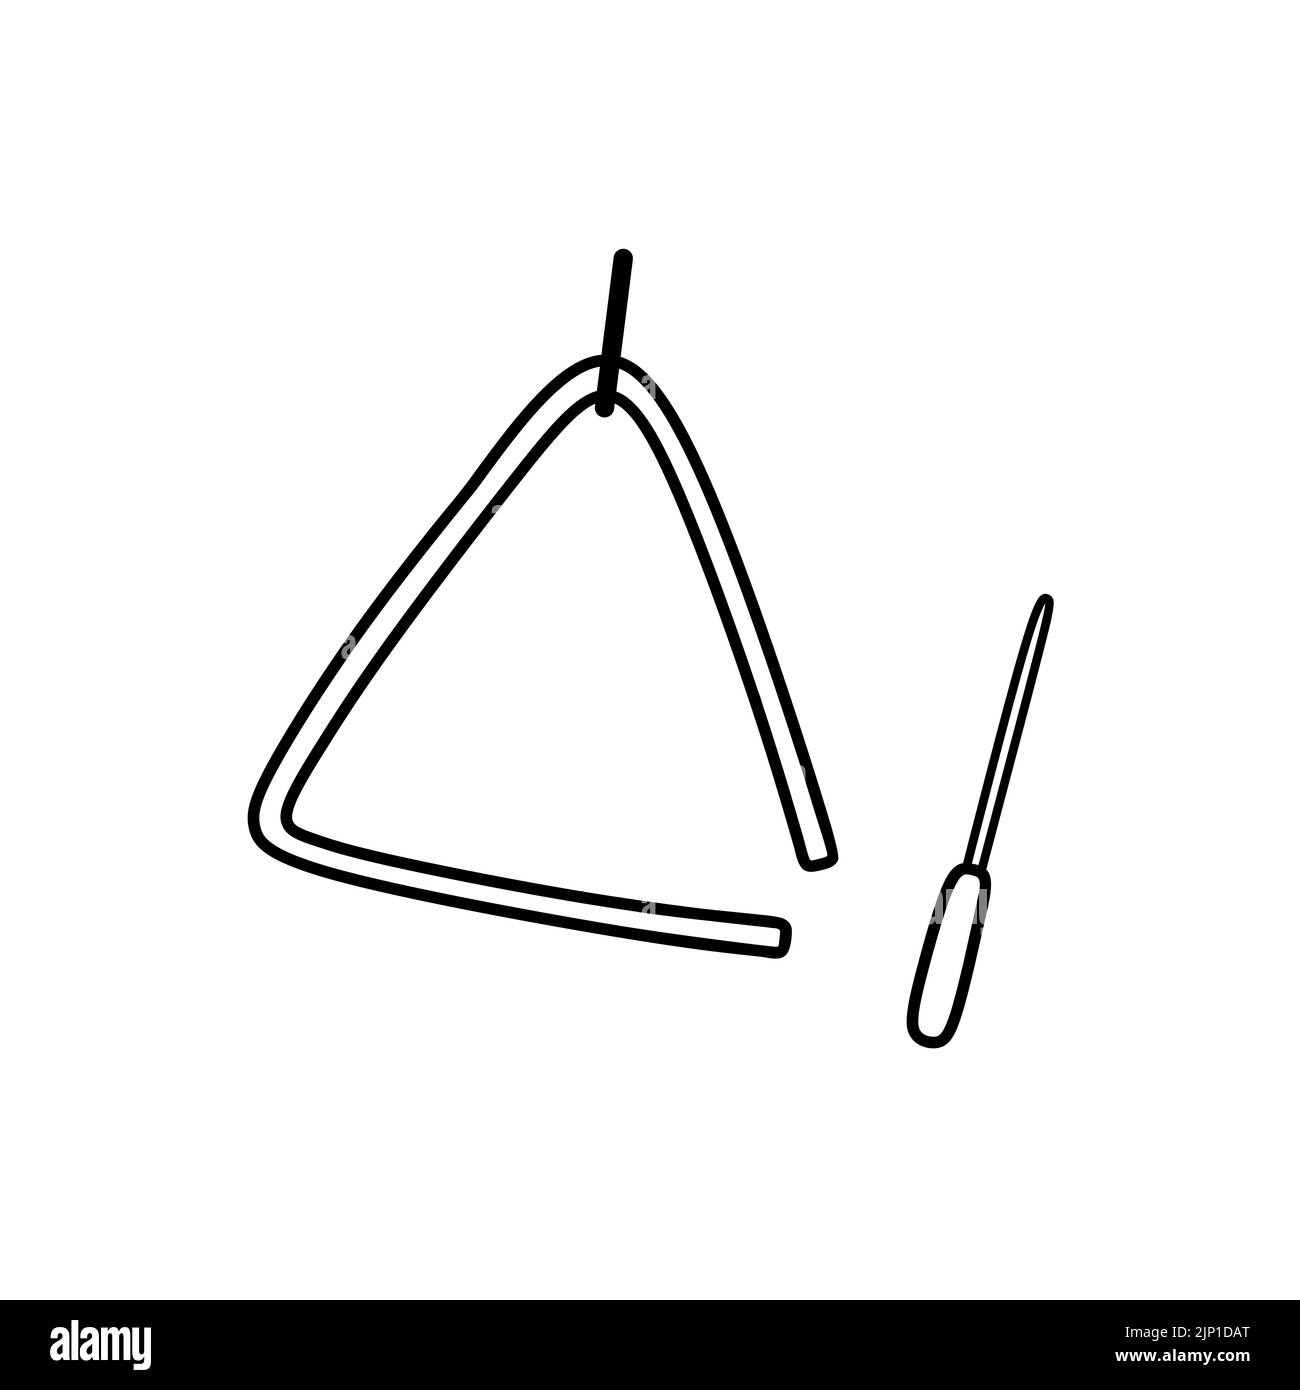 Instrument de musique triangle isolé sur fond blanc. Illustration vectorielle dessinée à la main, style doodle. Parfait pour les cartes, les décorations, le logo, divers motifs. Illustration de Vecteur